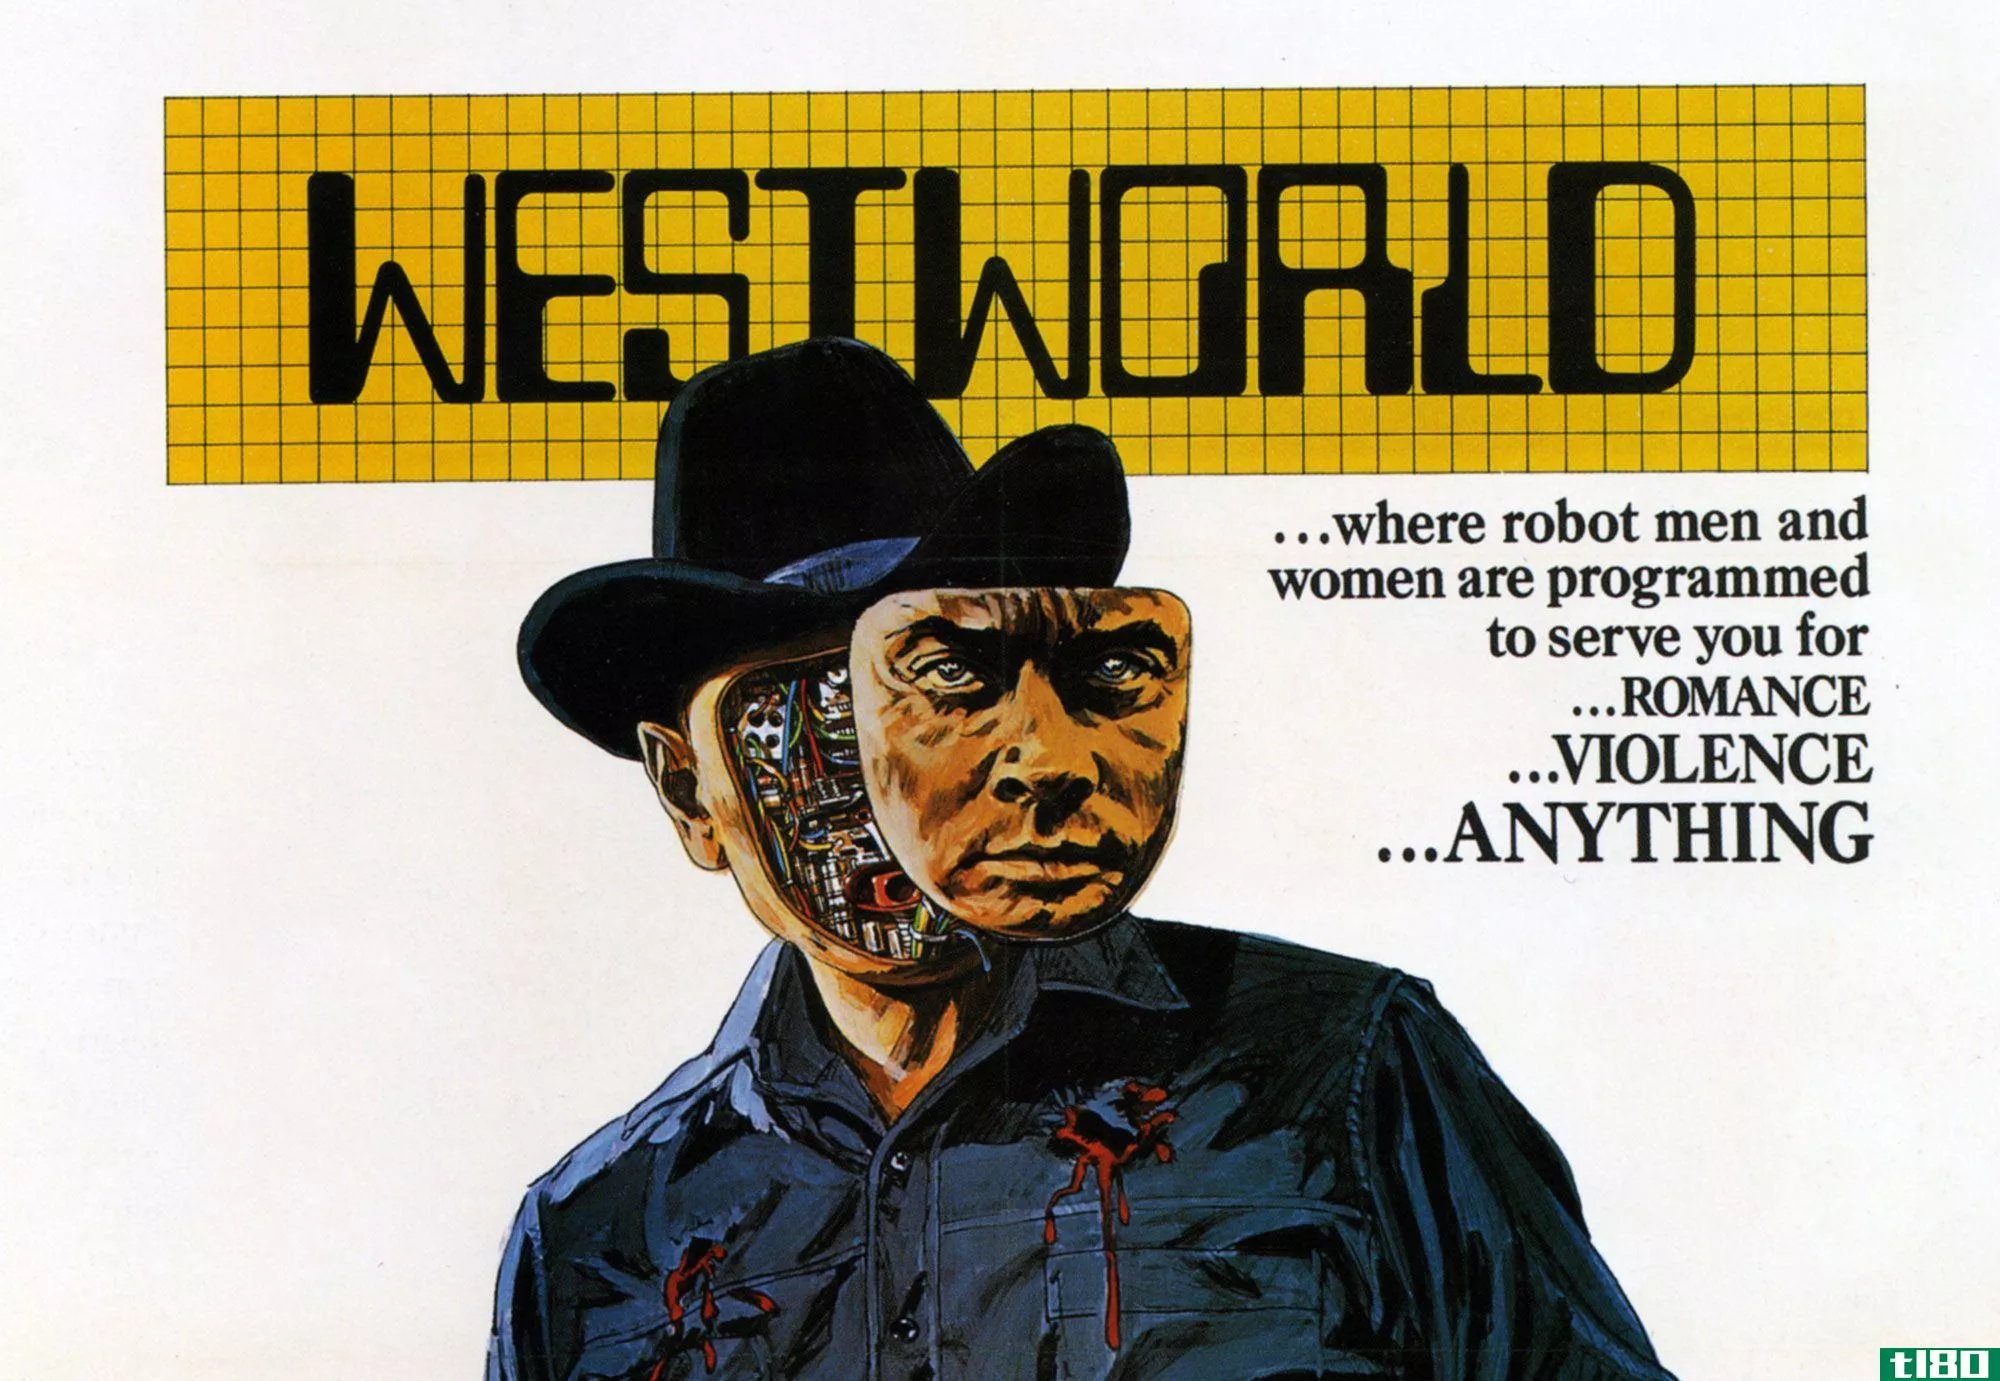 hbo的“西部世界”电视节目将由安东尼·霍普金斯和致命的机器人主演